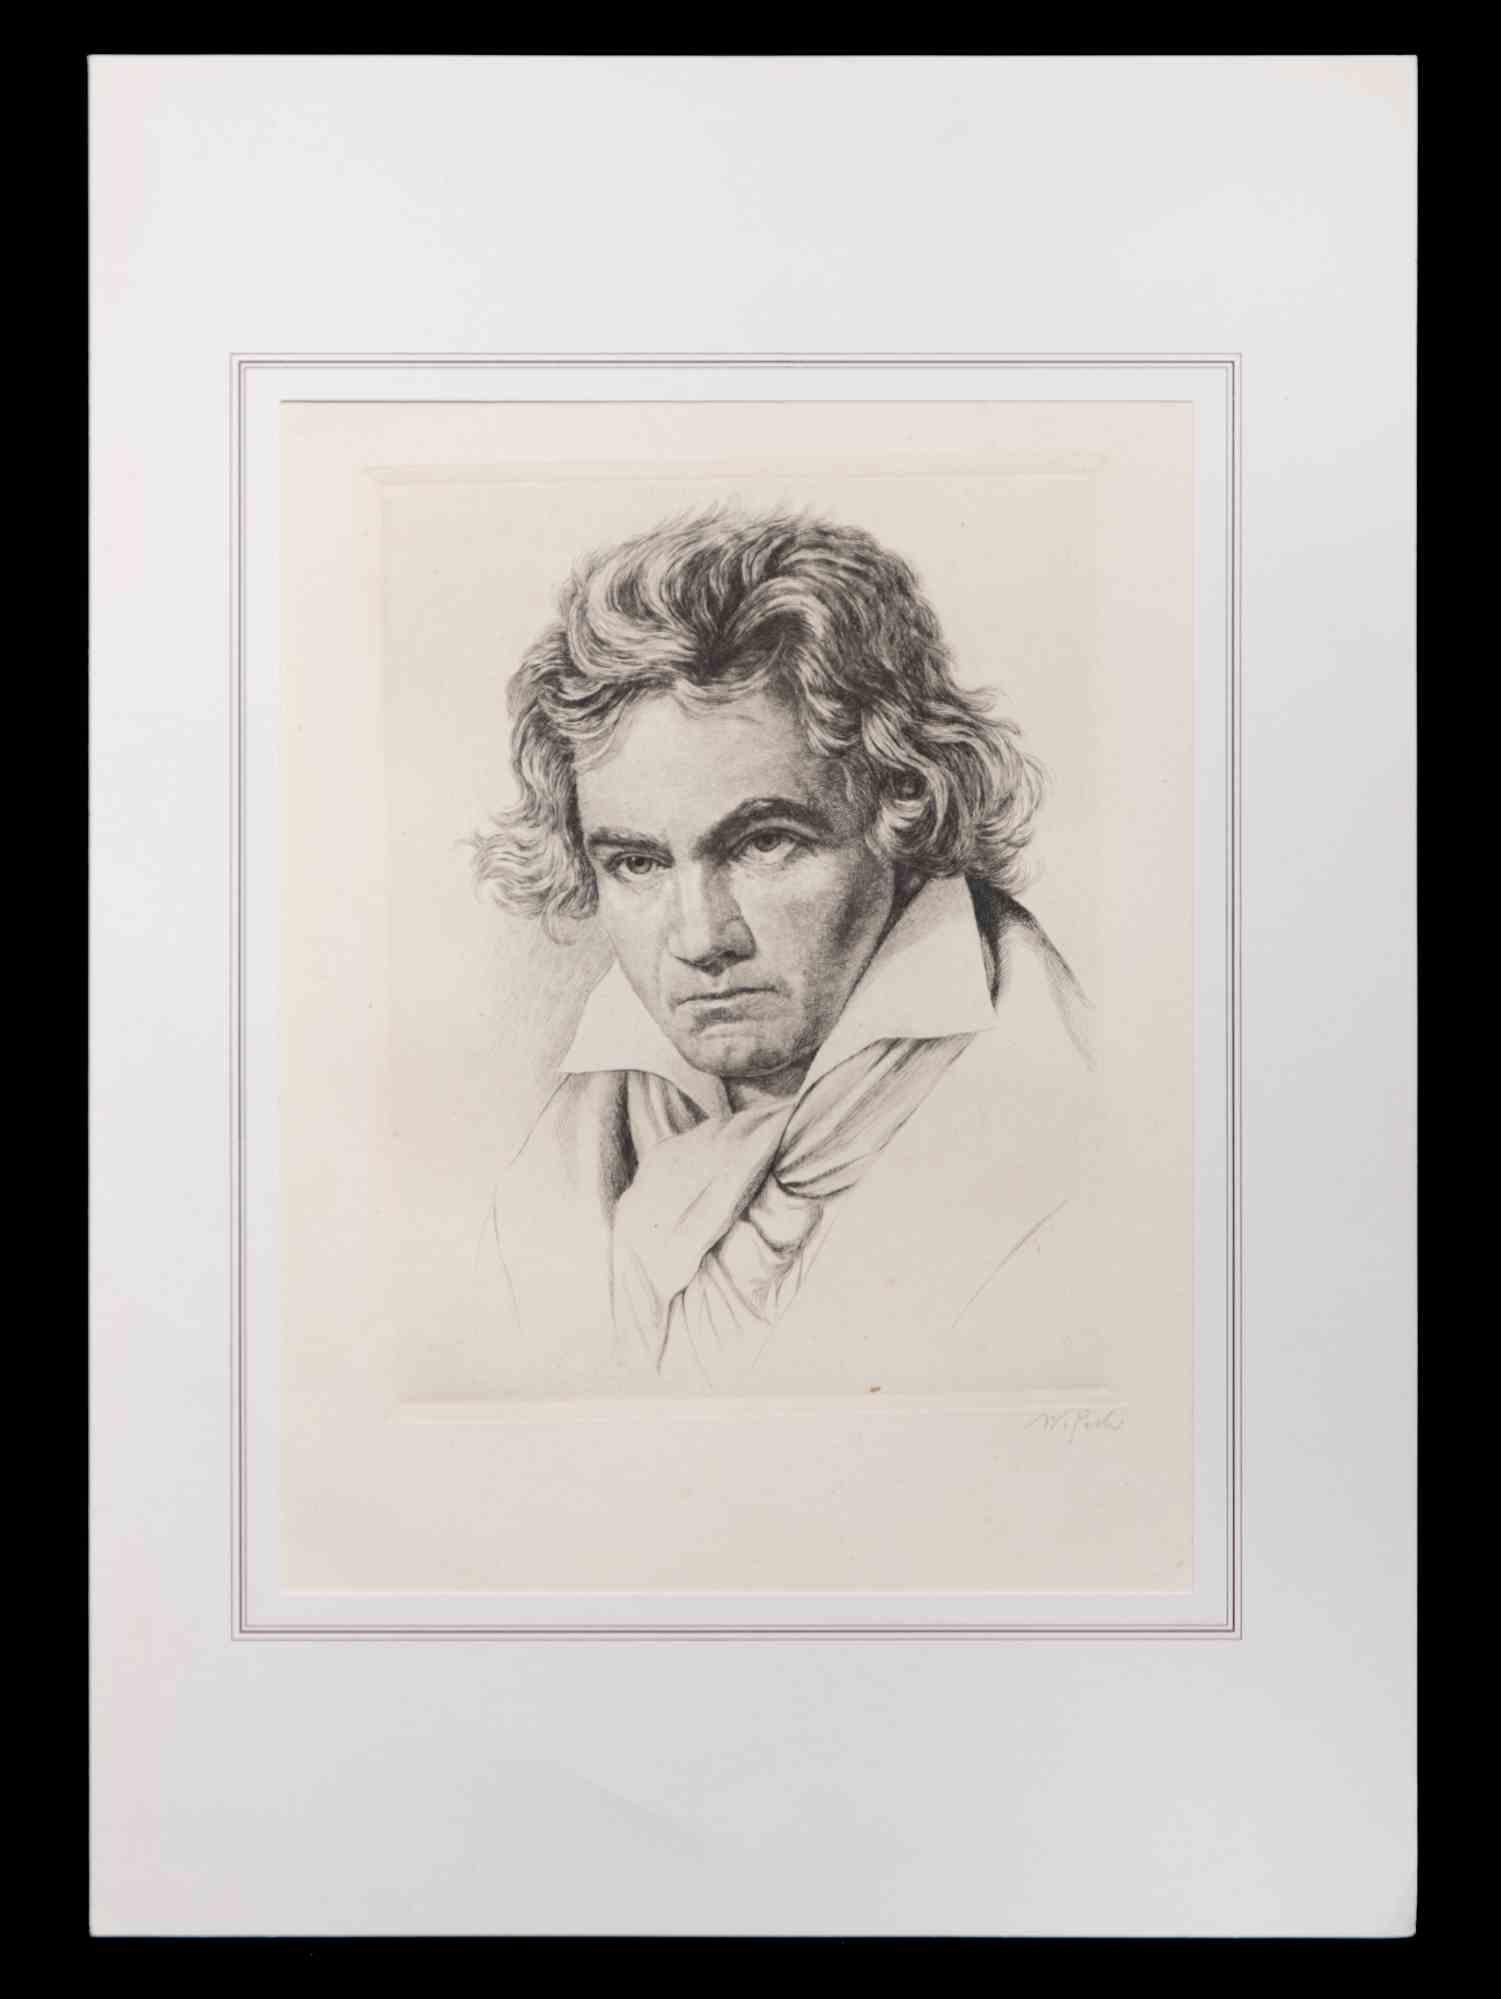 Das Porträt von Ludwig van Beethoven ist ein Kunstwerk von Max Wulff aus dem Jahr 1920.

Schwarz-Weiß-Lithographie.

Nicht unterzeichnet. 